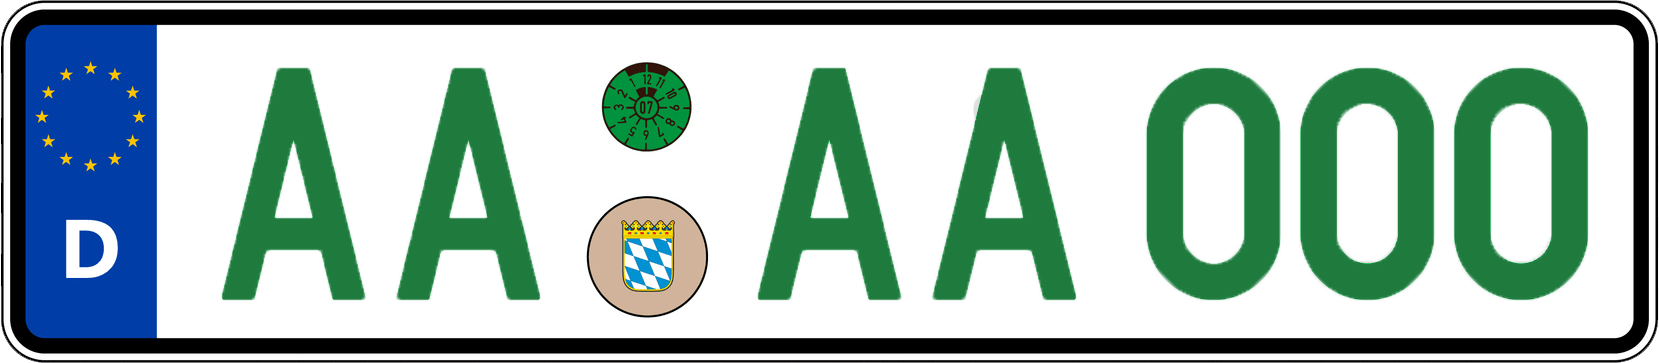 Grünes Kfz-Kennzeichen für steuerbefreite Fahrzeuge